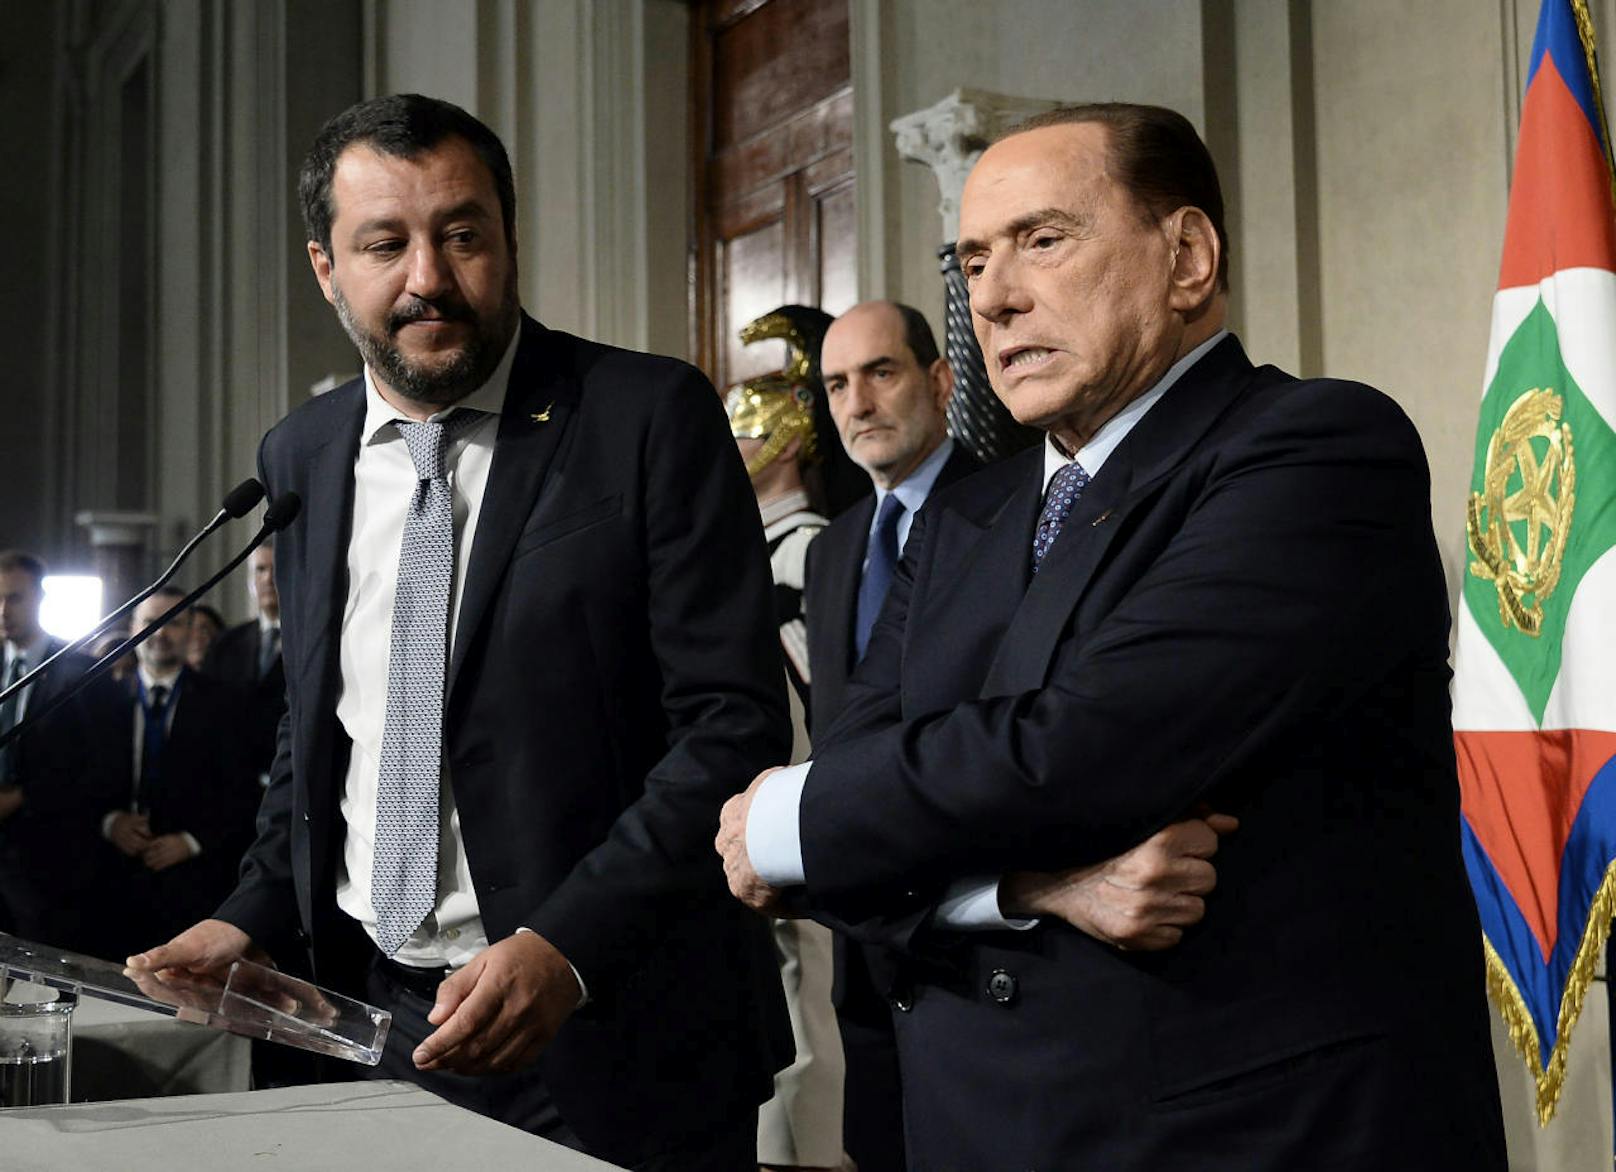 Matteo Salvini (l.) von der Lega Nord mit Silvio Berlusconi, Chef der Forza Italia